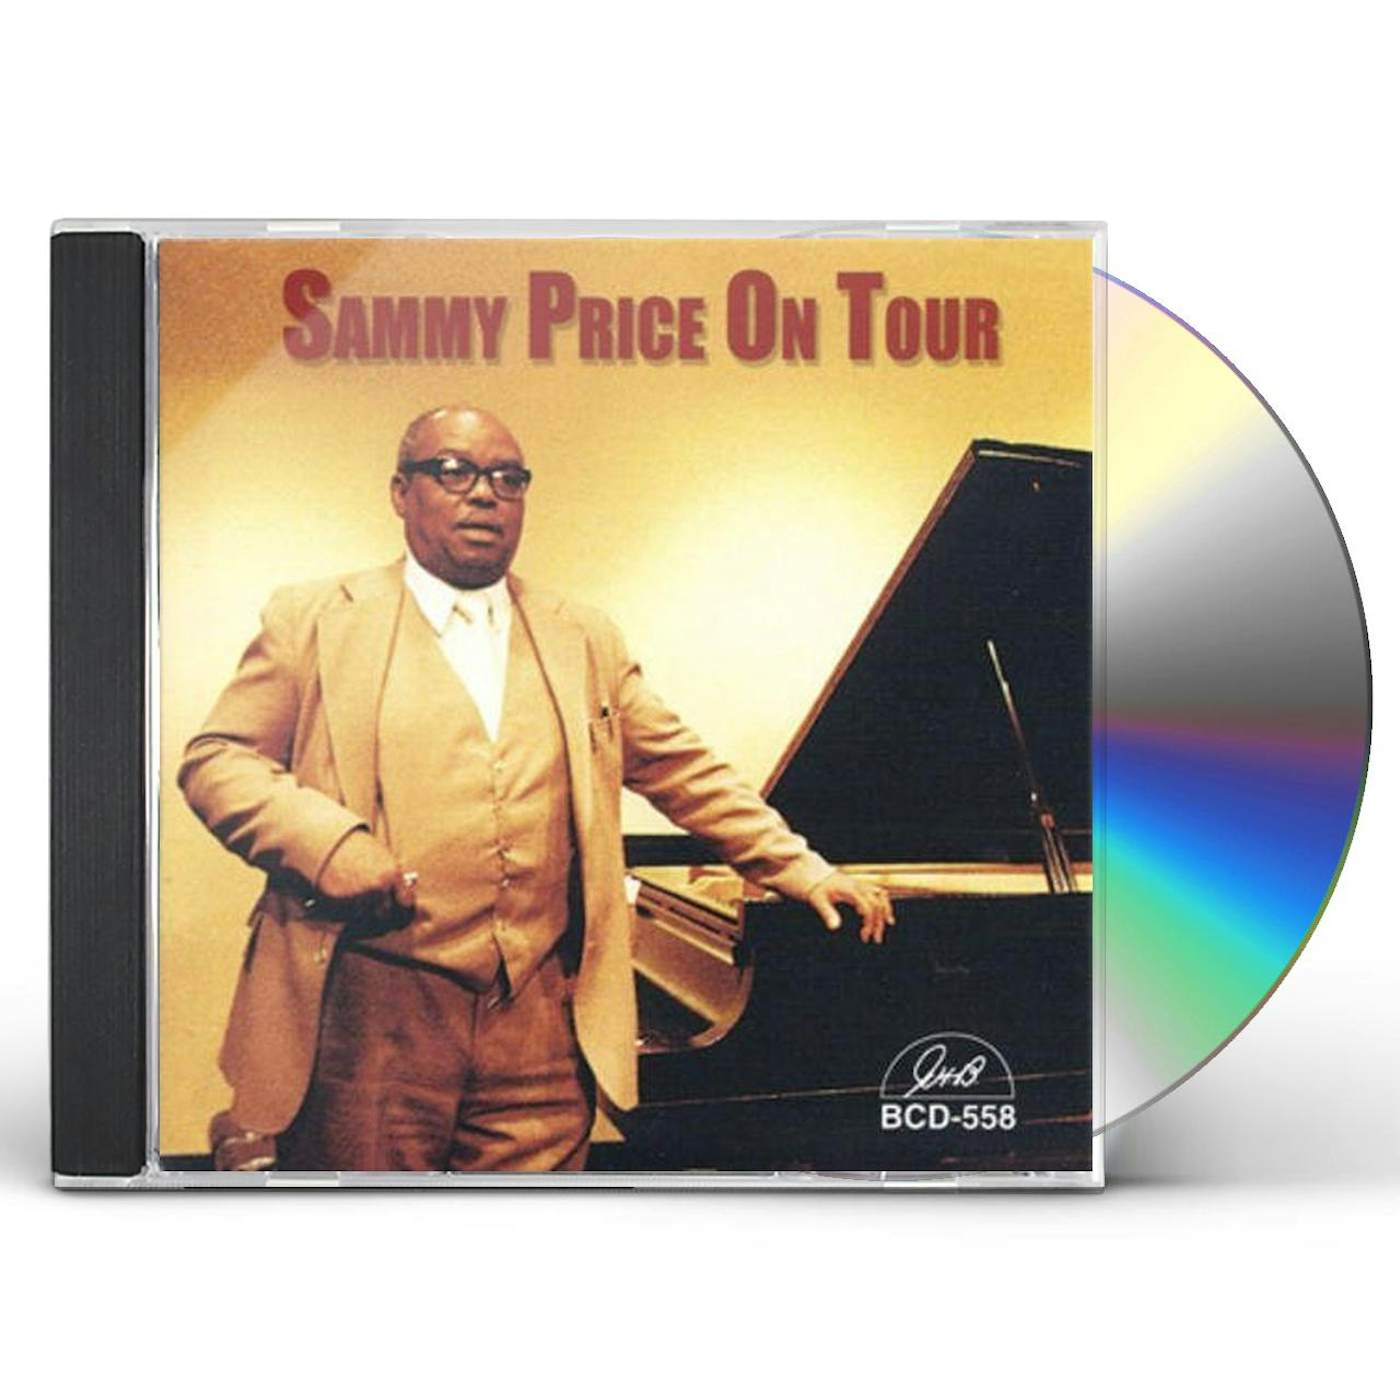 SAMMY PRICE ON TOUR CD